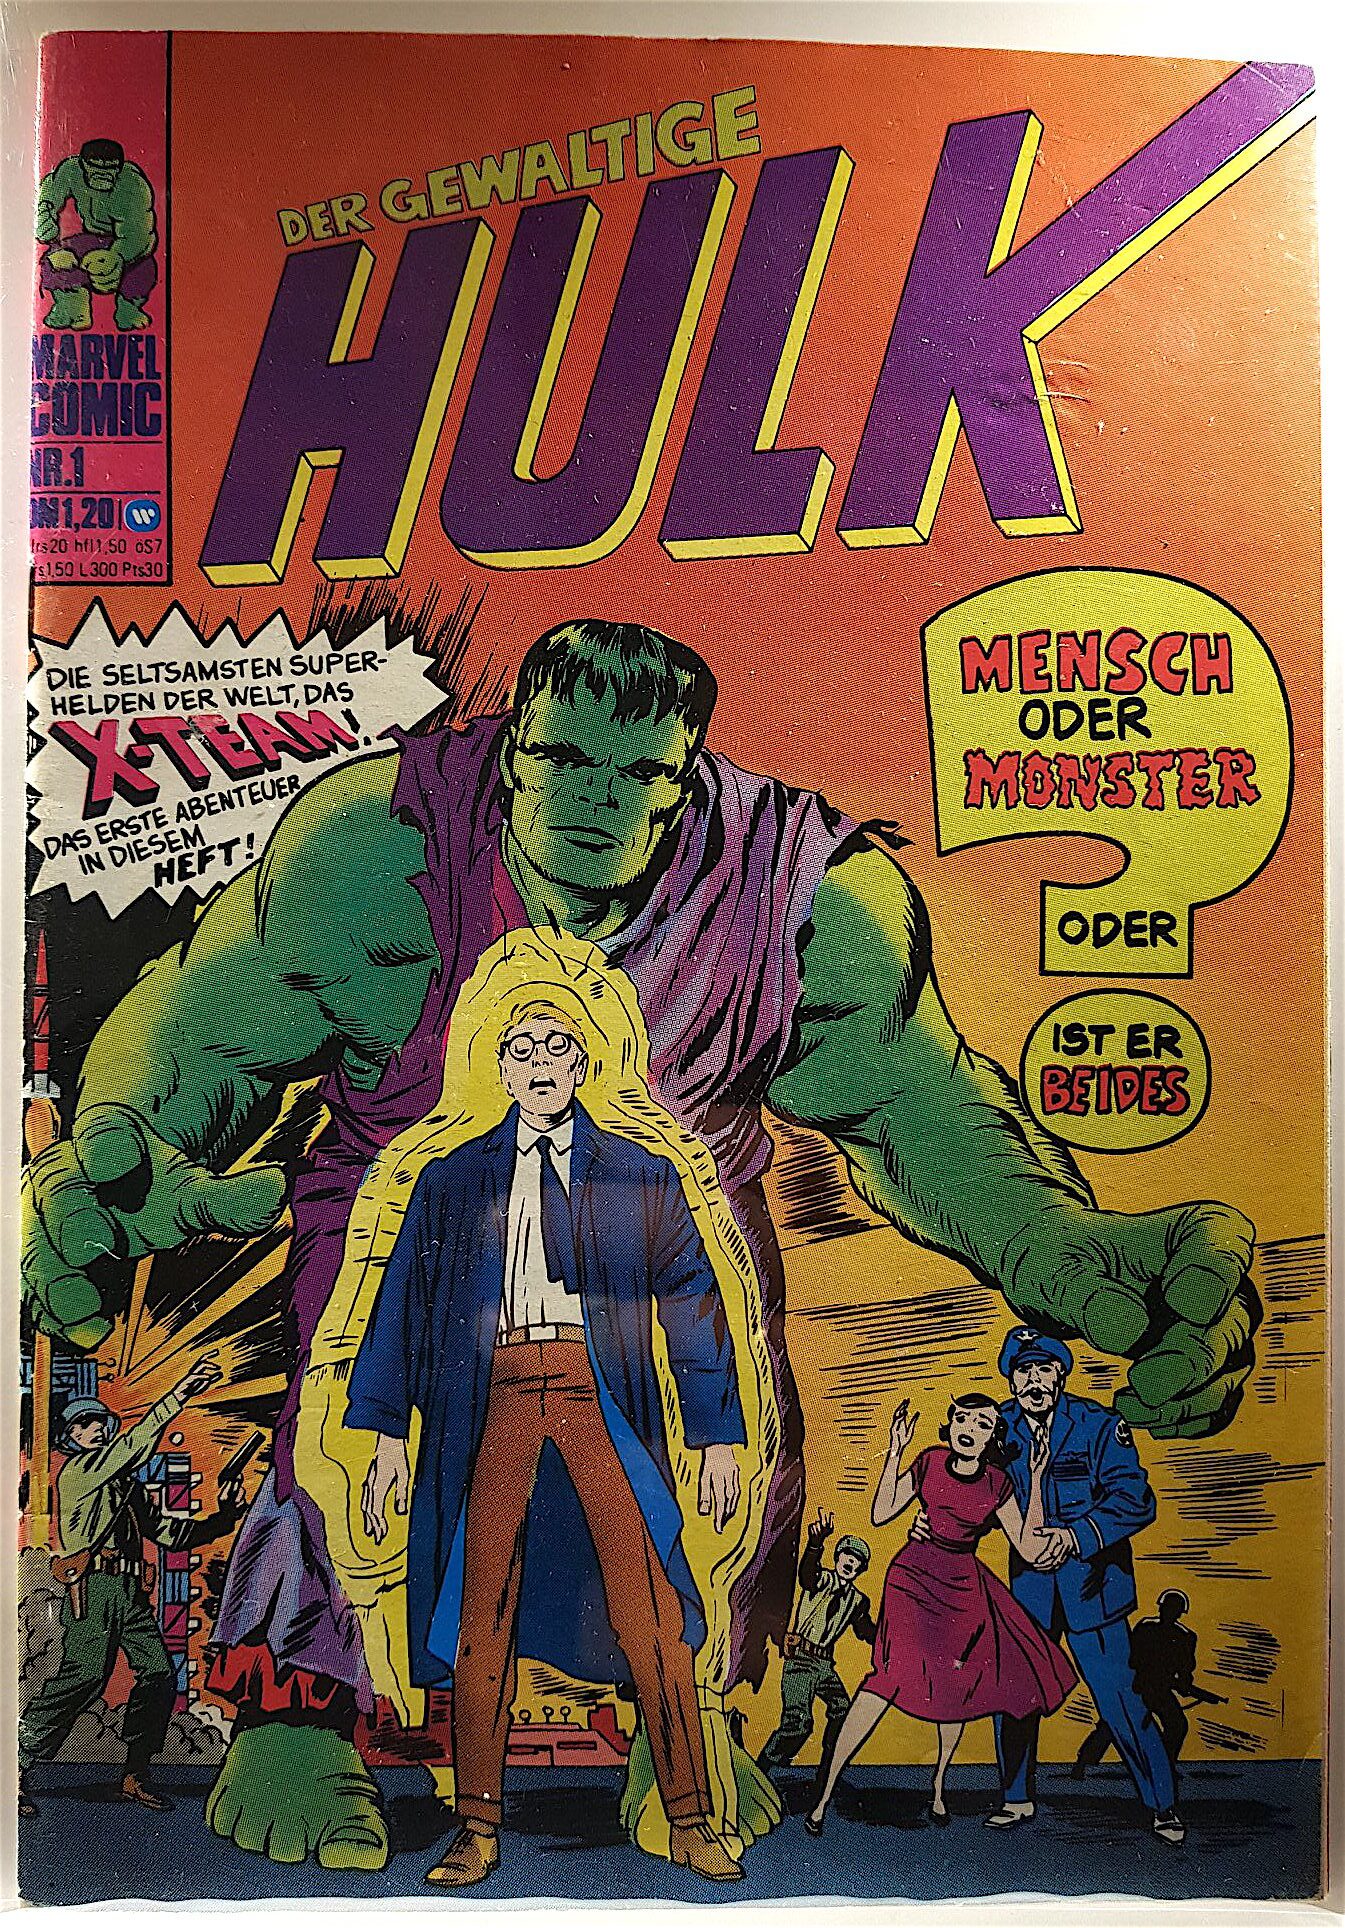 Carátula de la edición alemana Hulk Nº 1 con Hulk ya coloreado de verde